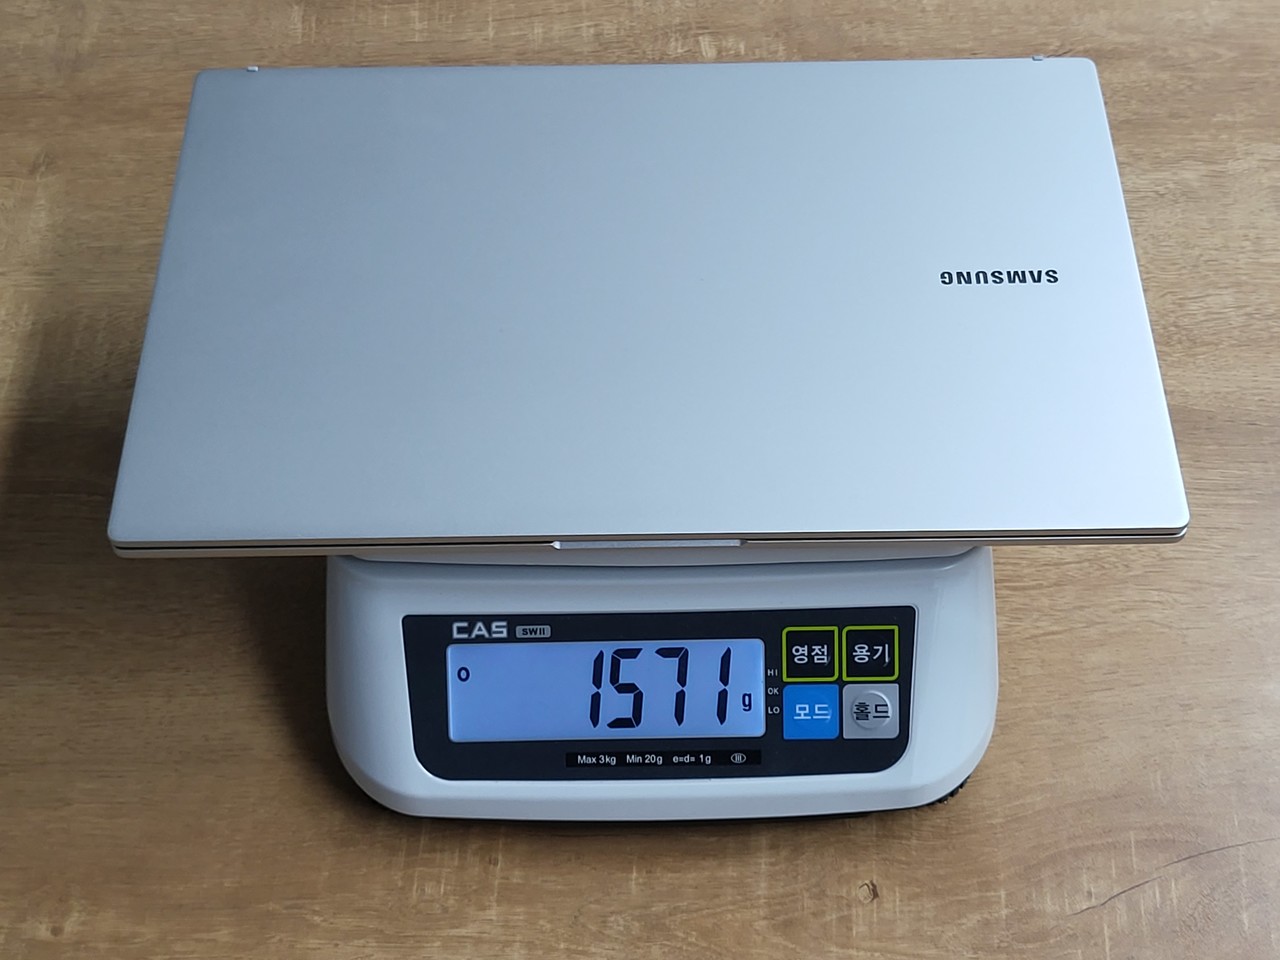 ▲ 무게는 공식 무게(1.59kg)보다 가벼운 1.57kg로 확인된다.